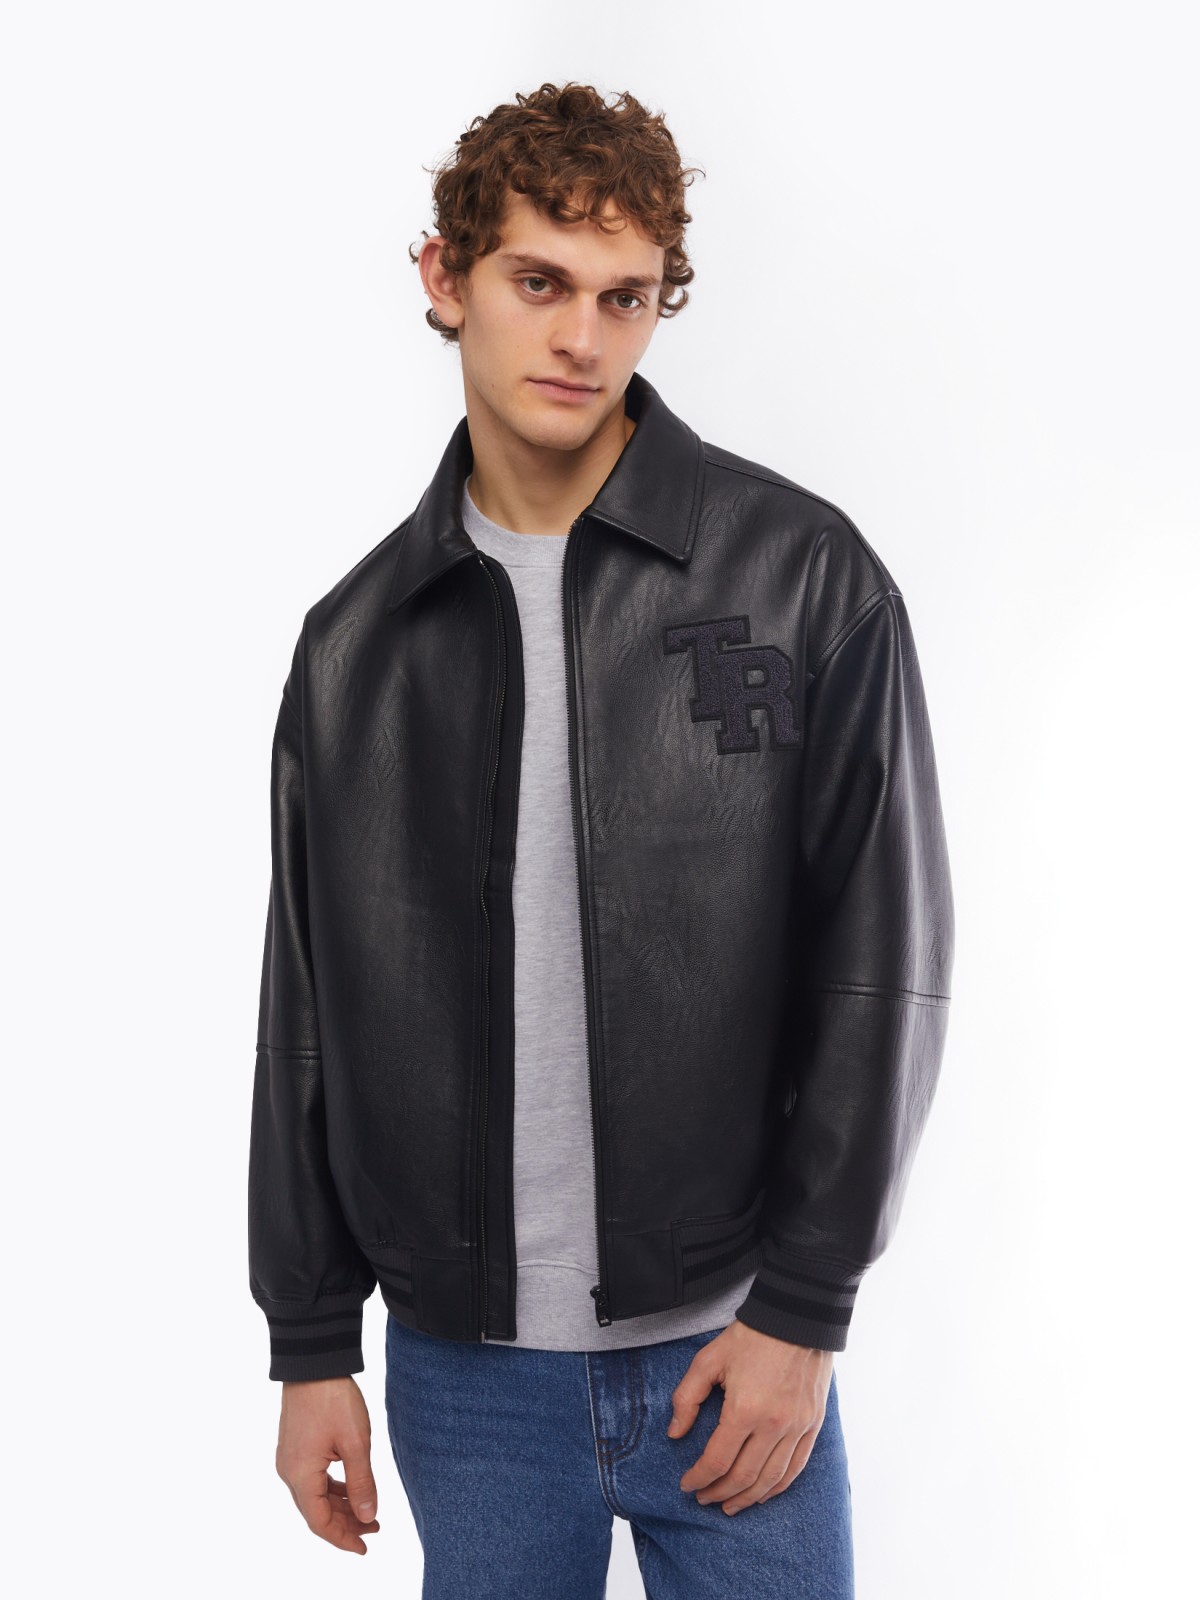 Куртка-ветровка zolla 014135602054, цвет черный, размер S - фото 3